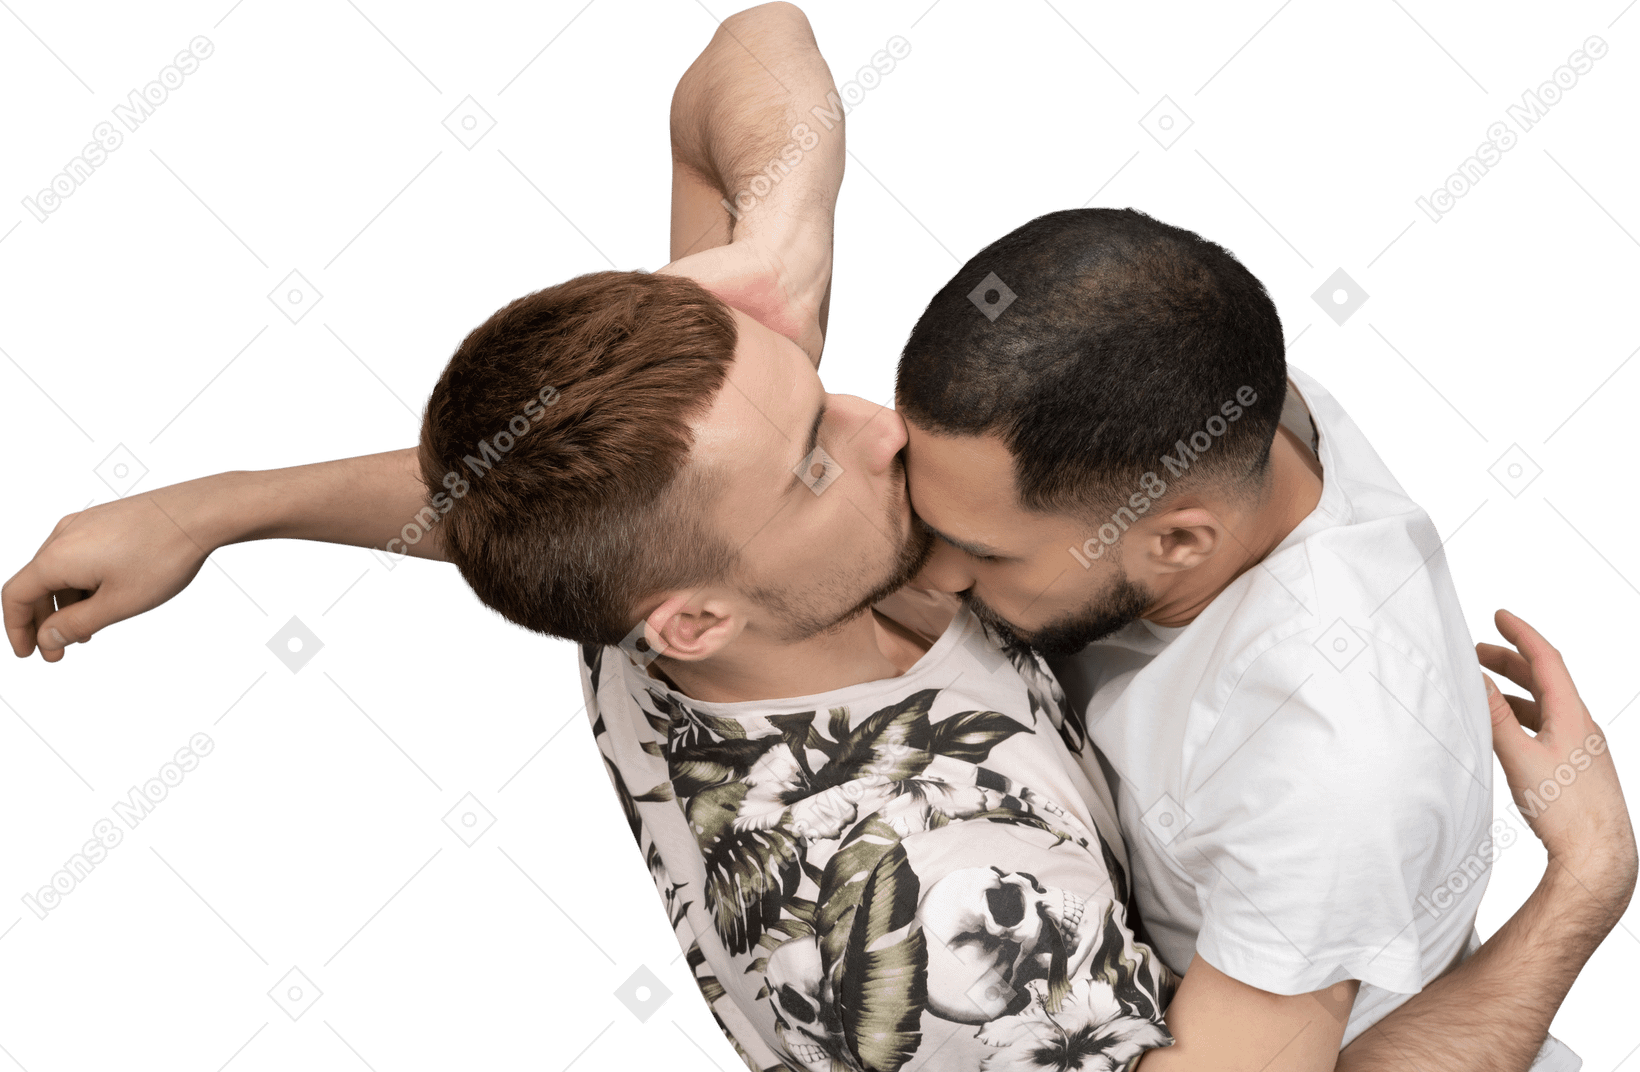 Flache lage von zwei jungen kaukasischen männern, die auf dem boden liegen, einer die stirn eines anderen küssen